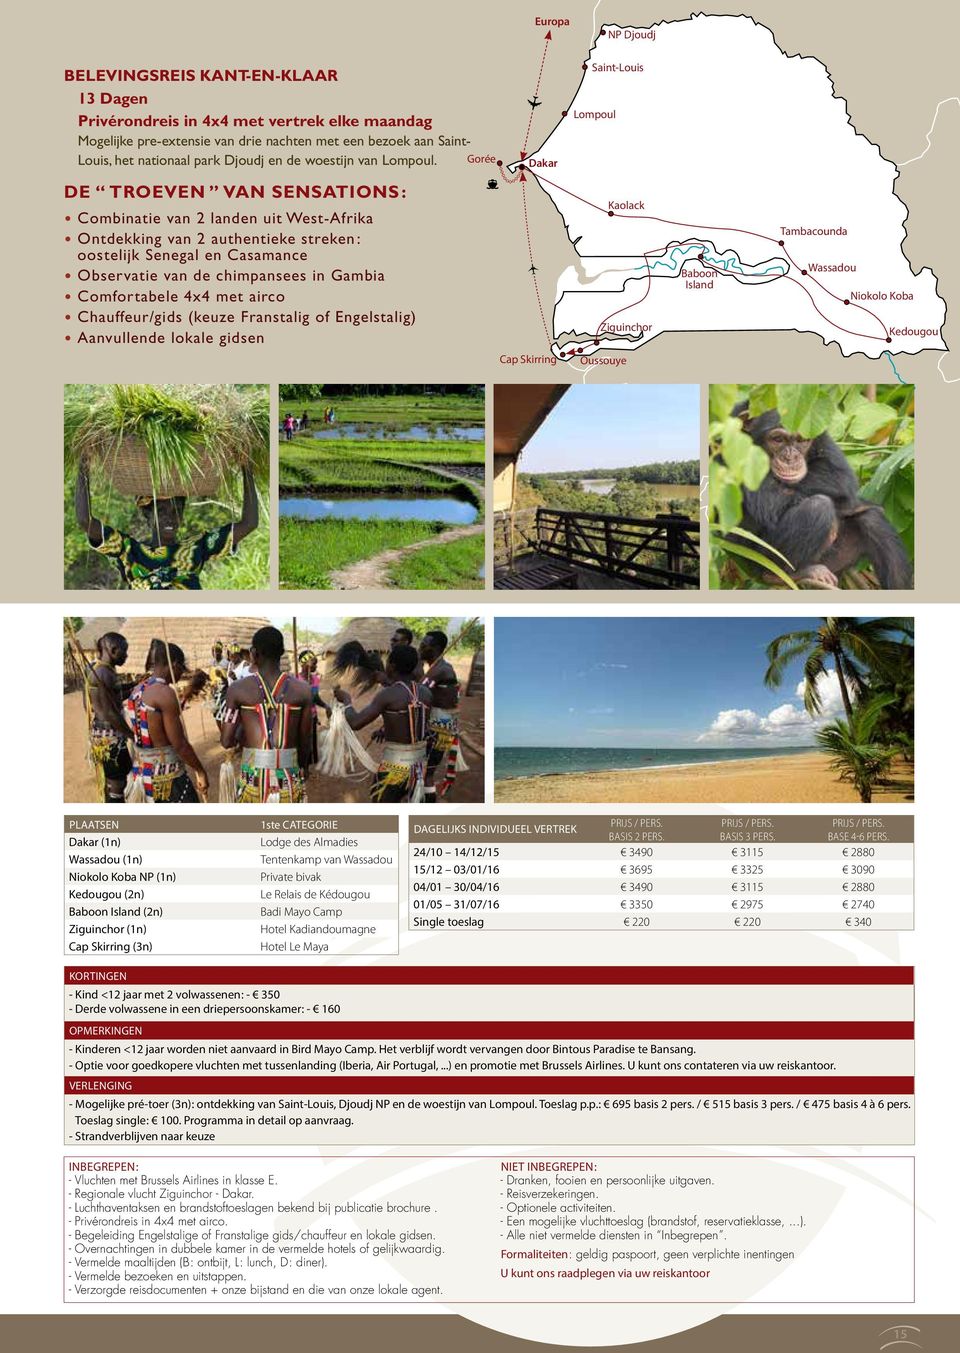 Gorée Dakar Saint-Louis Lompoul DE TROEVEN VAN SENSATIONS : Combinatie van 2 landen uit West-Afrika Ontdekking van 2 authentieke streken : oostelijk Senegal en Casamance Observatie van de chimpansees